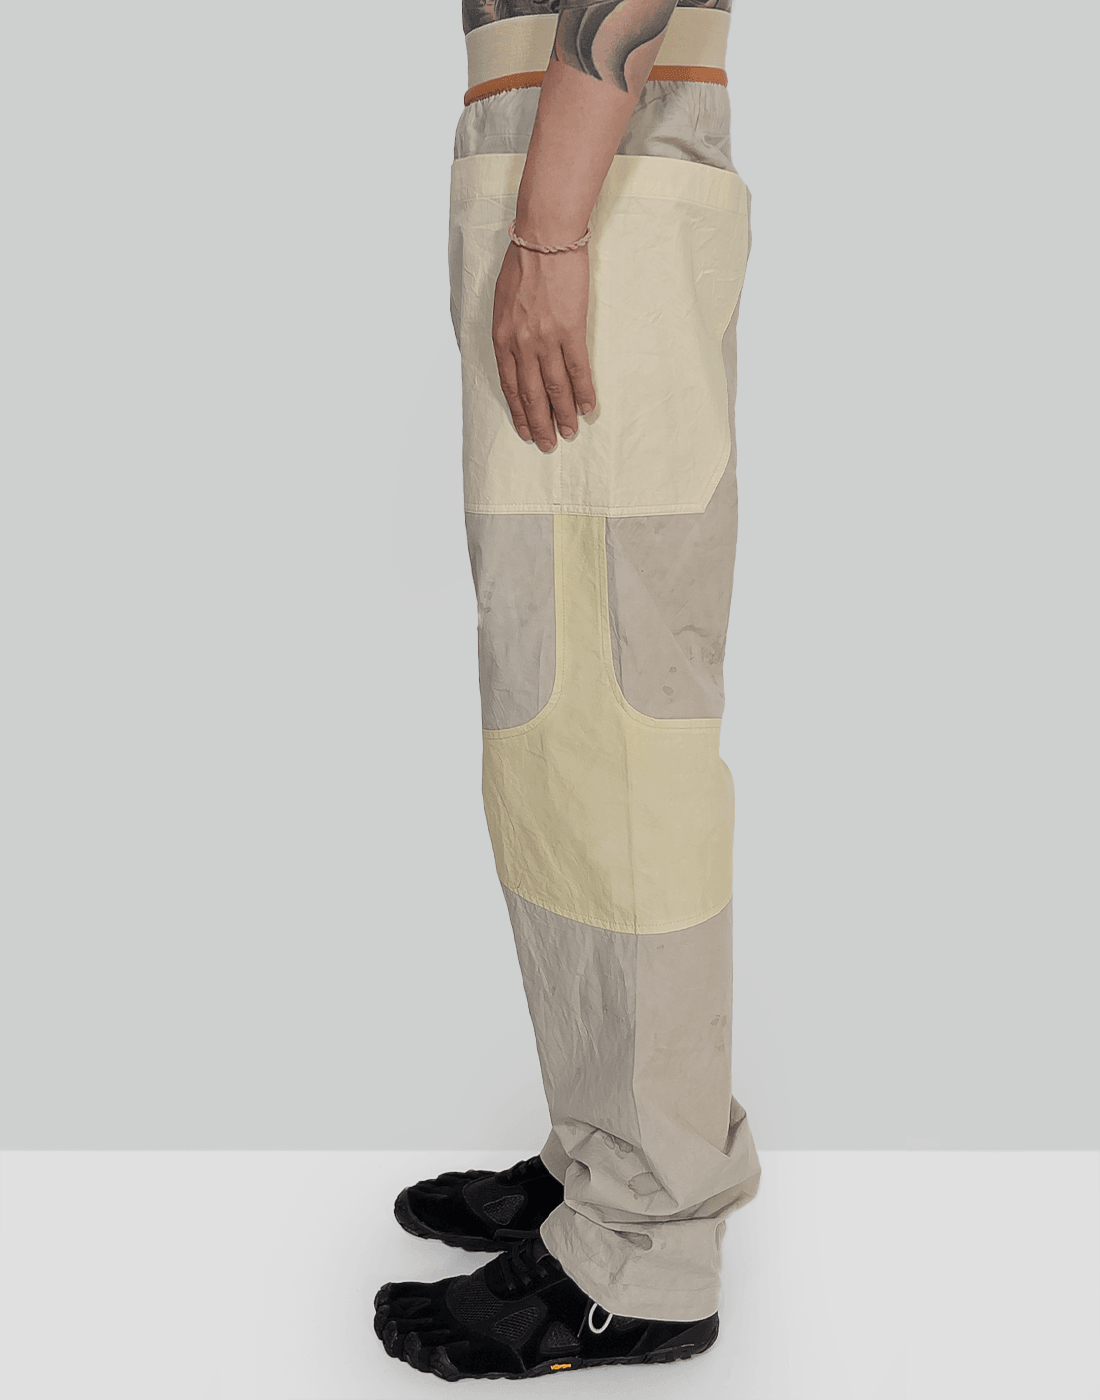 パンツRANRA Pistill Panelled Trouser パンツ ランラ